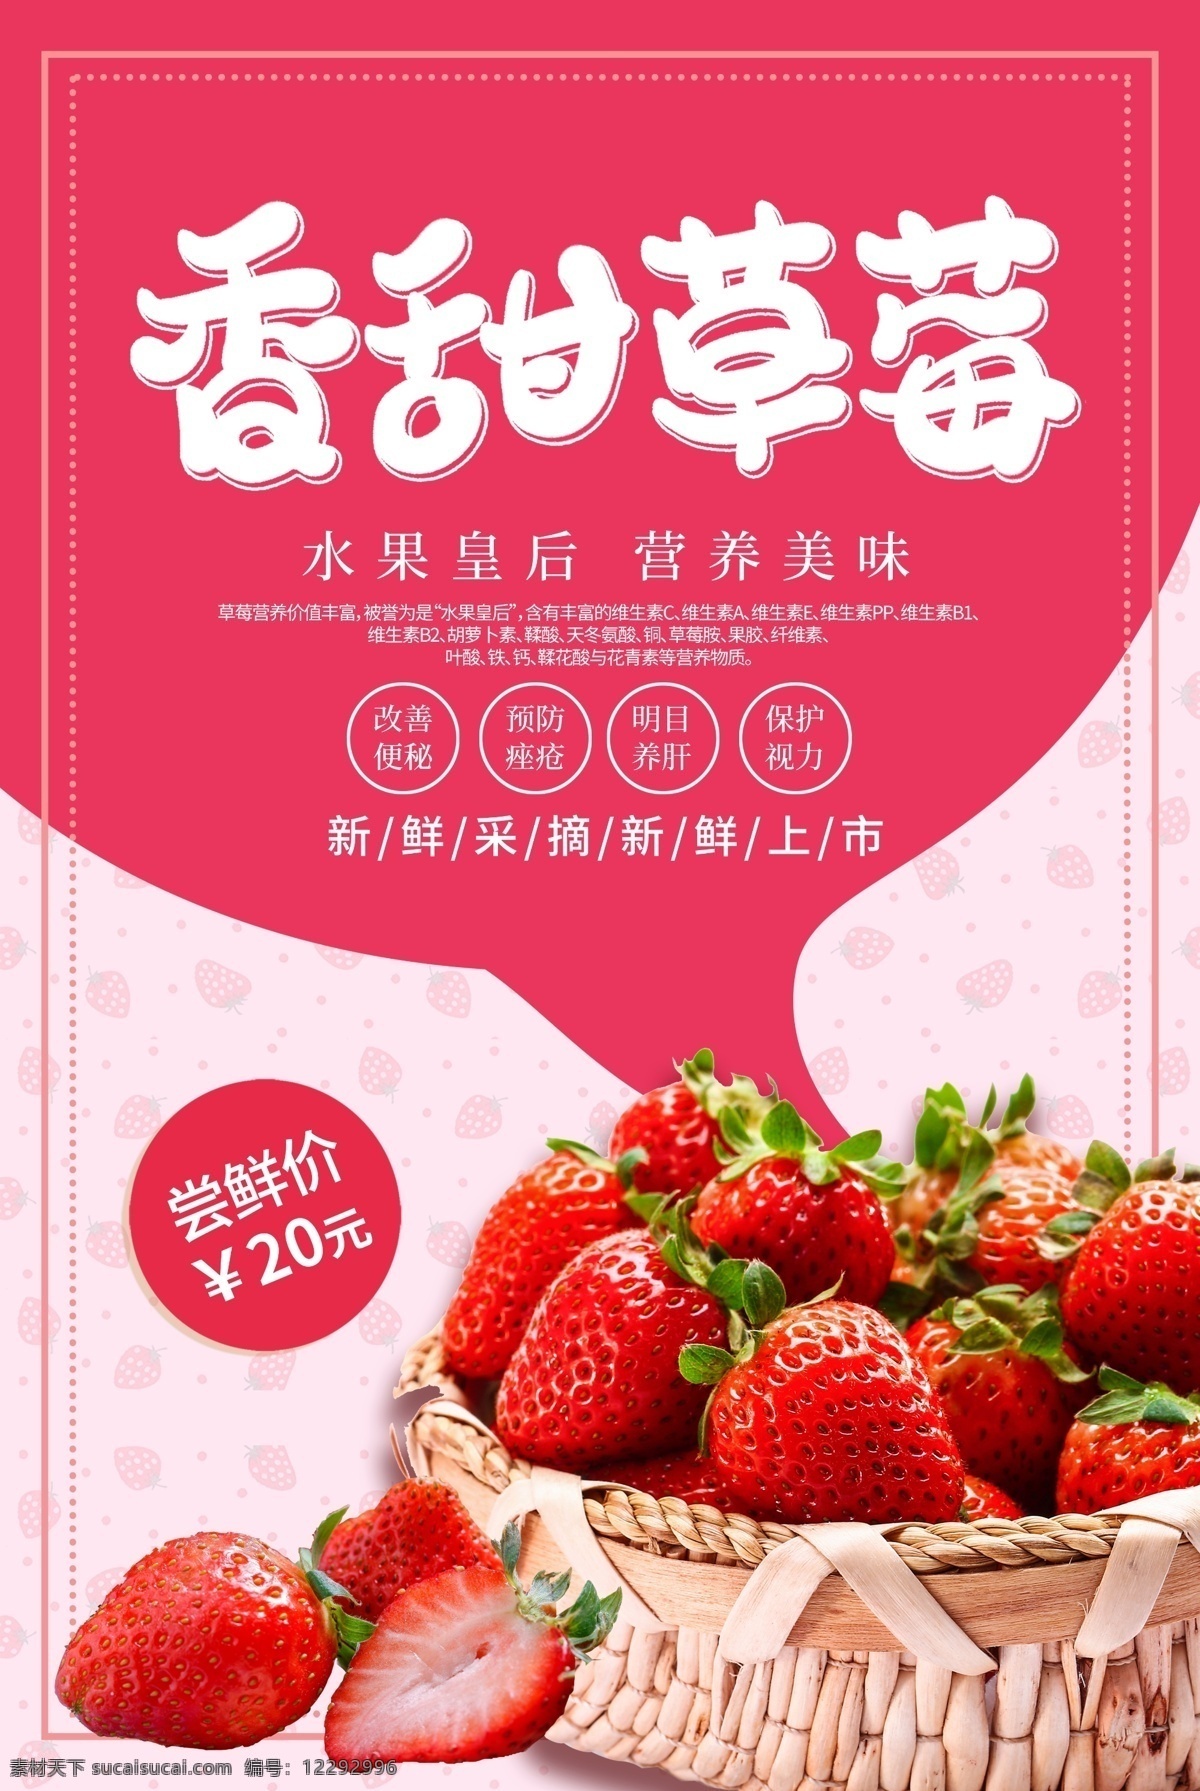 简约 粉红色 香甜 草莓 水果 海报 奶油草莓 水果海报 水果皇后 水果促销 促销海报 香甜海报 水果店促销 水果宣传